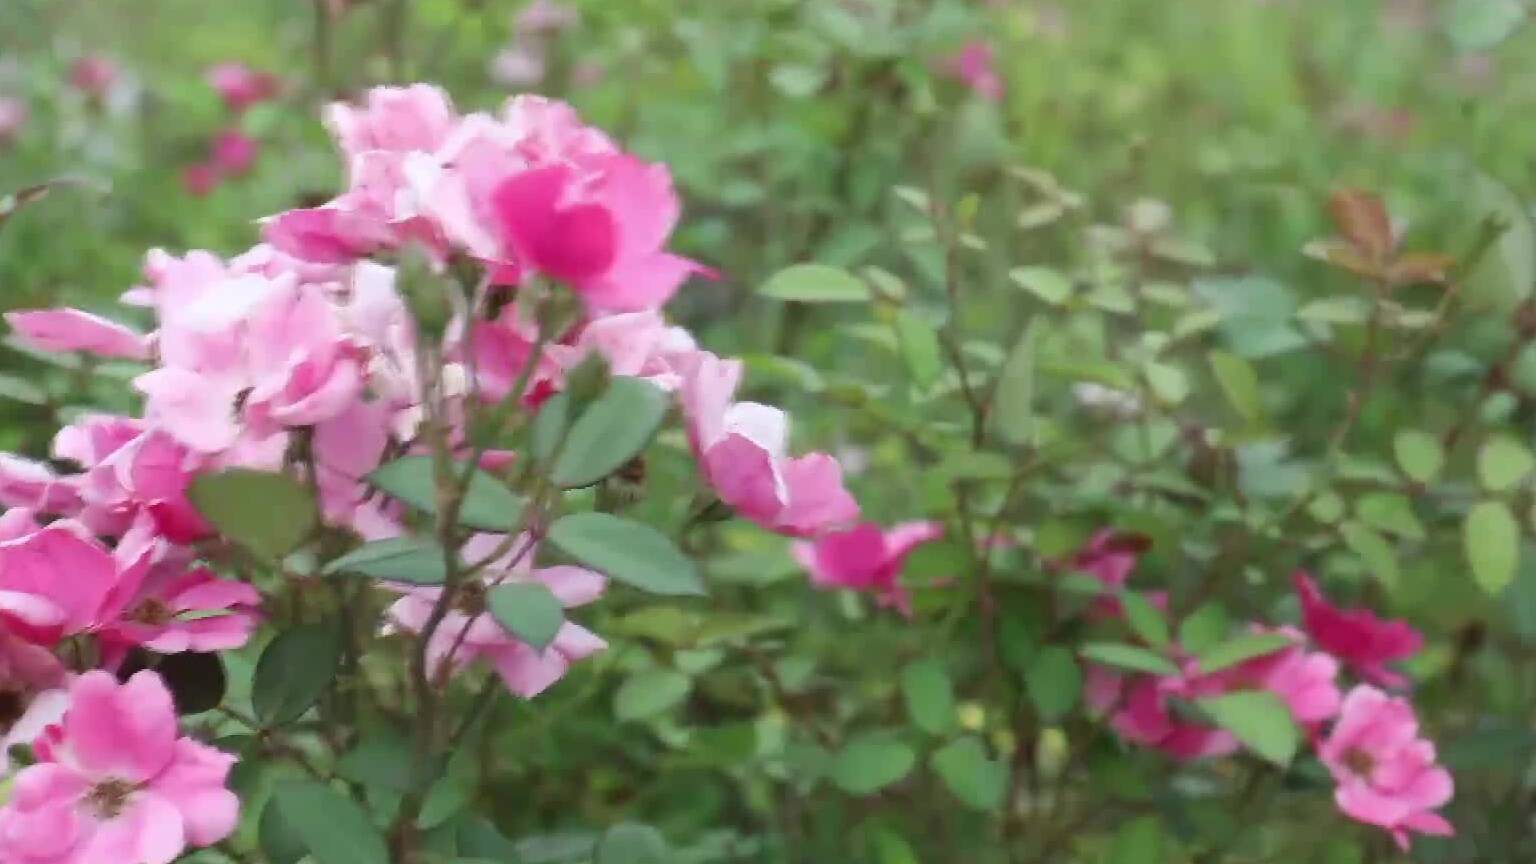 朵朵小花成簇绽放 枣庄市古龙河畔微型月季飘香